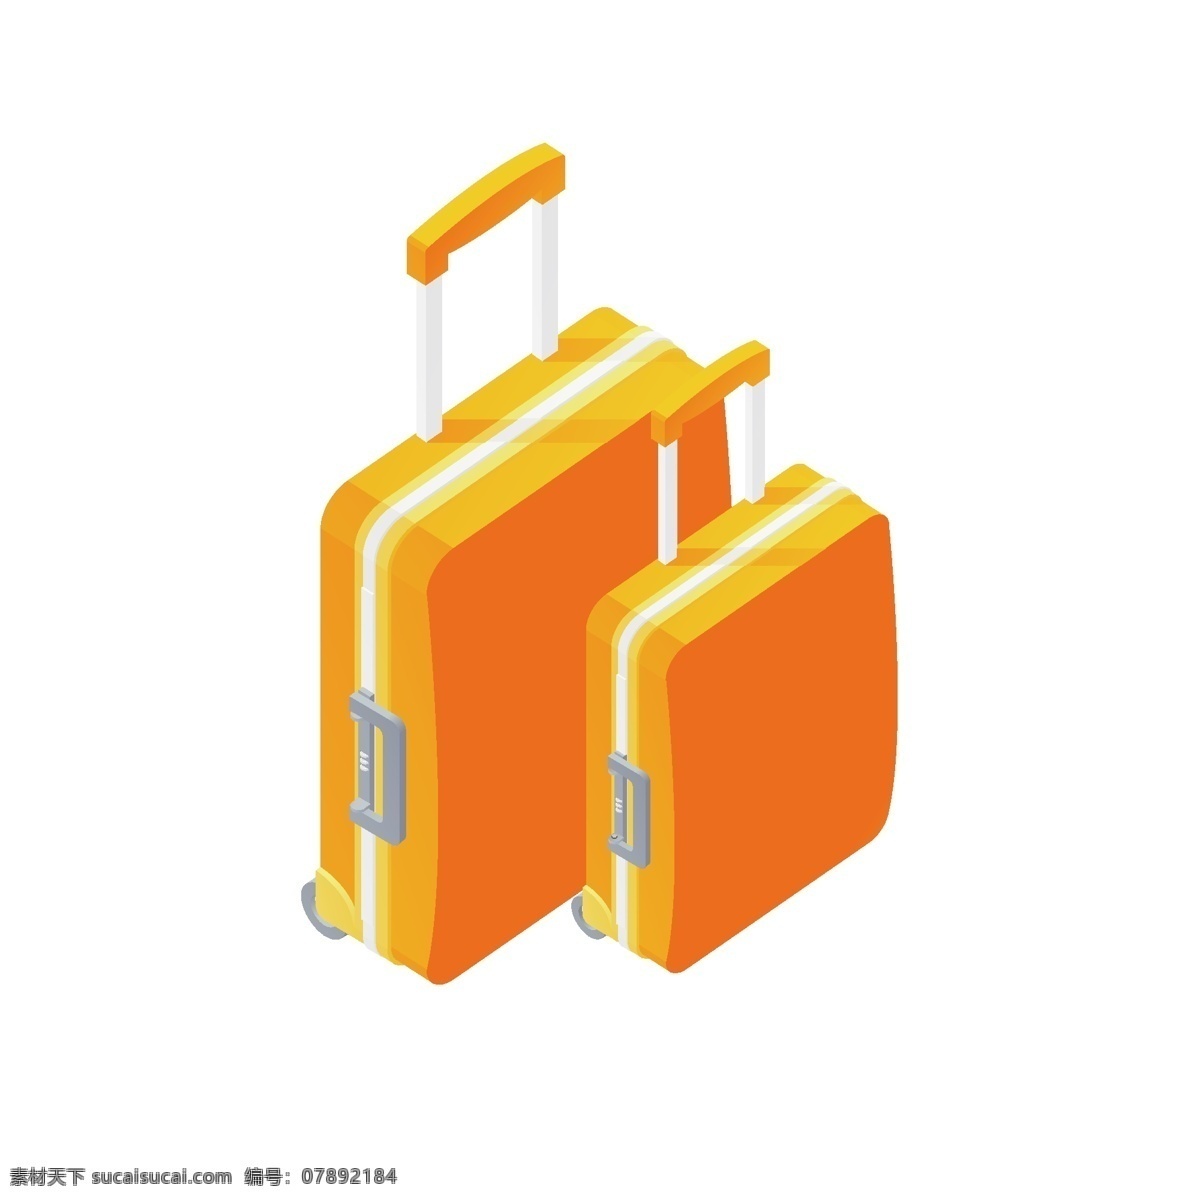 黄 橙色 手绘 卡通 旅行箱 行李箱 度假 旅游 卡通旅行箱 黄橙色 箱子 行李